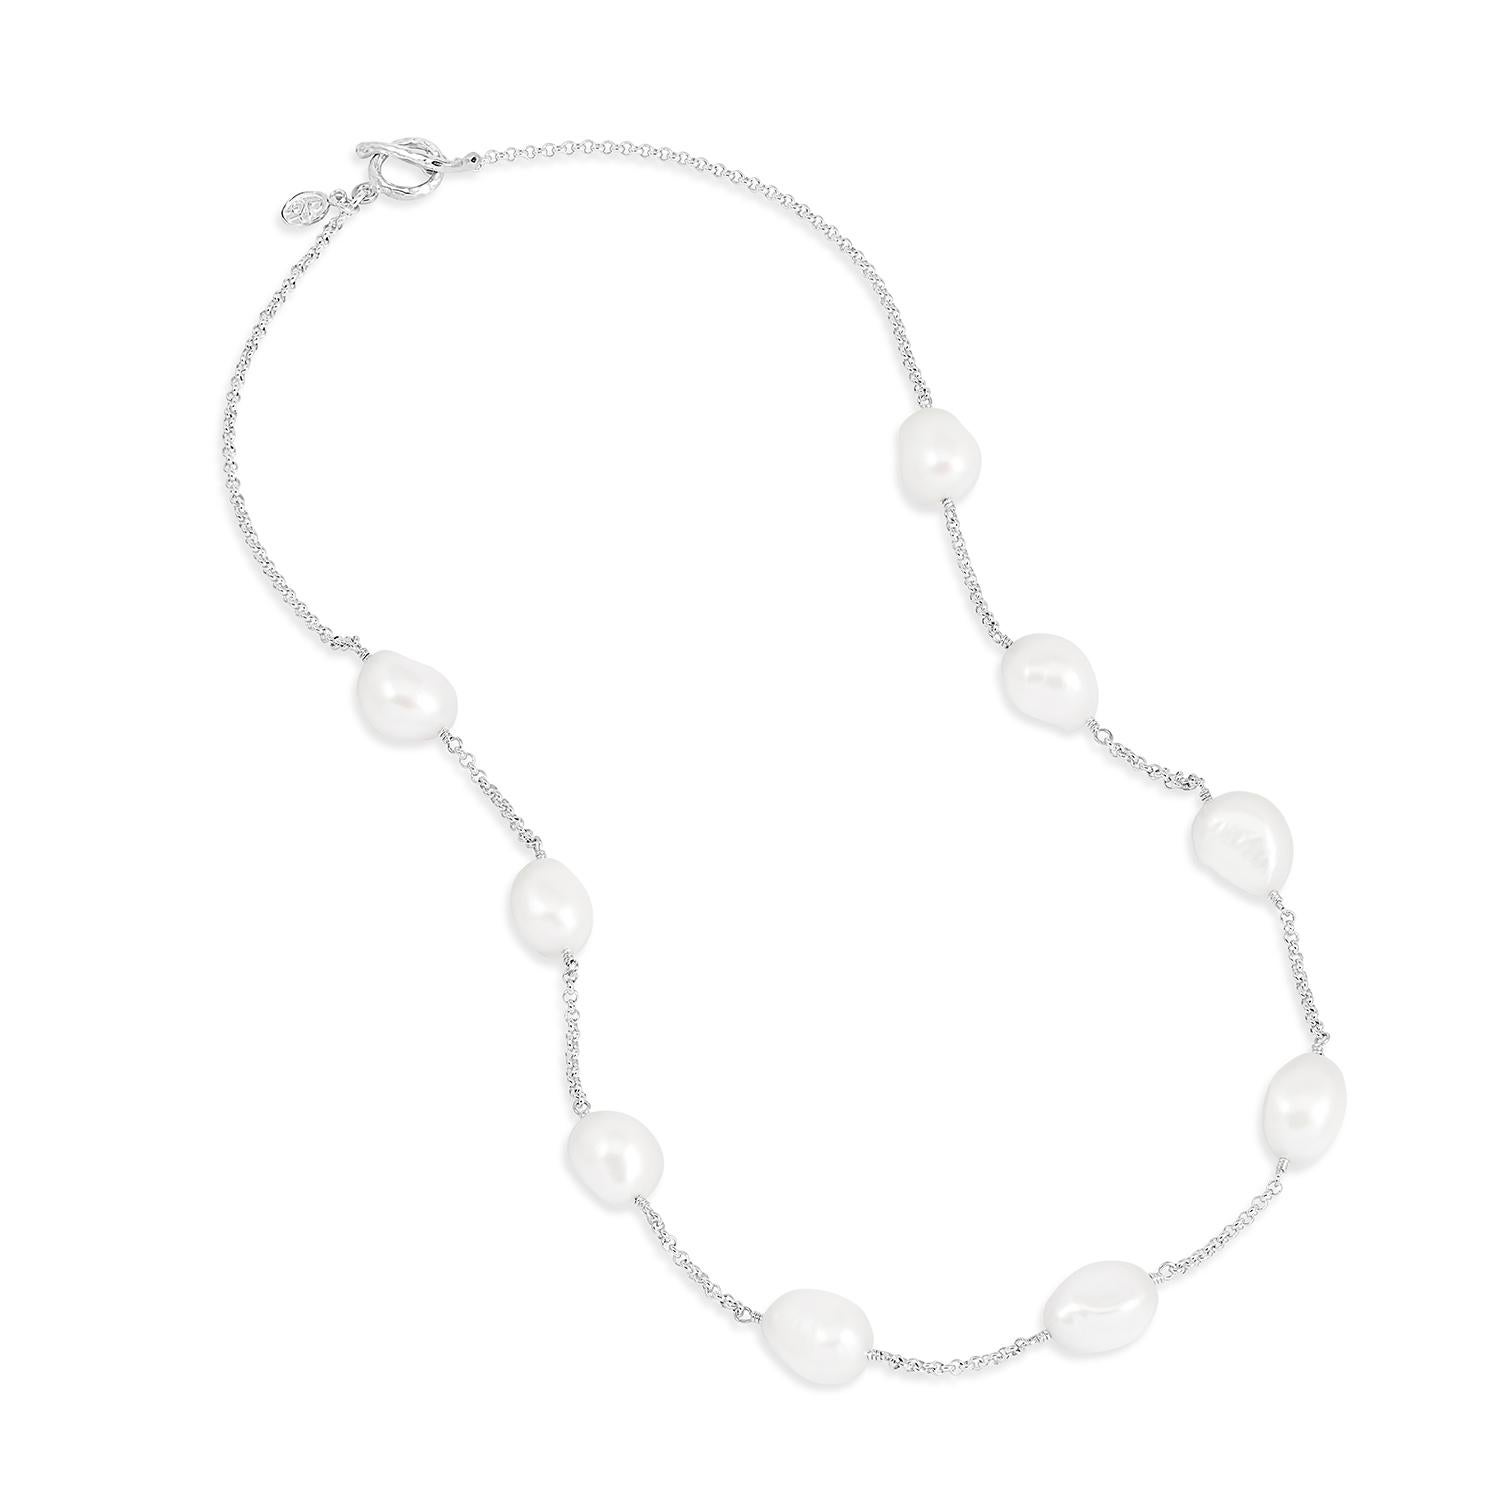 Fabriqué dans notre Studio de Londres, ce collier en argent sterling présente de grosses perles d'eau douce baroques blanches et lustrées, suspendues à une chaîne fine. Le collier est terminé par notre boucle martelée contemporaine signature et par